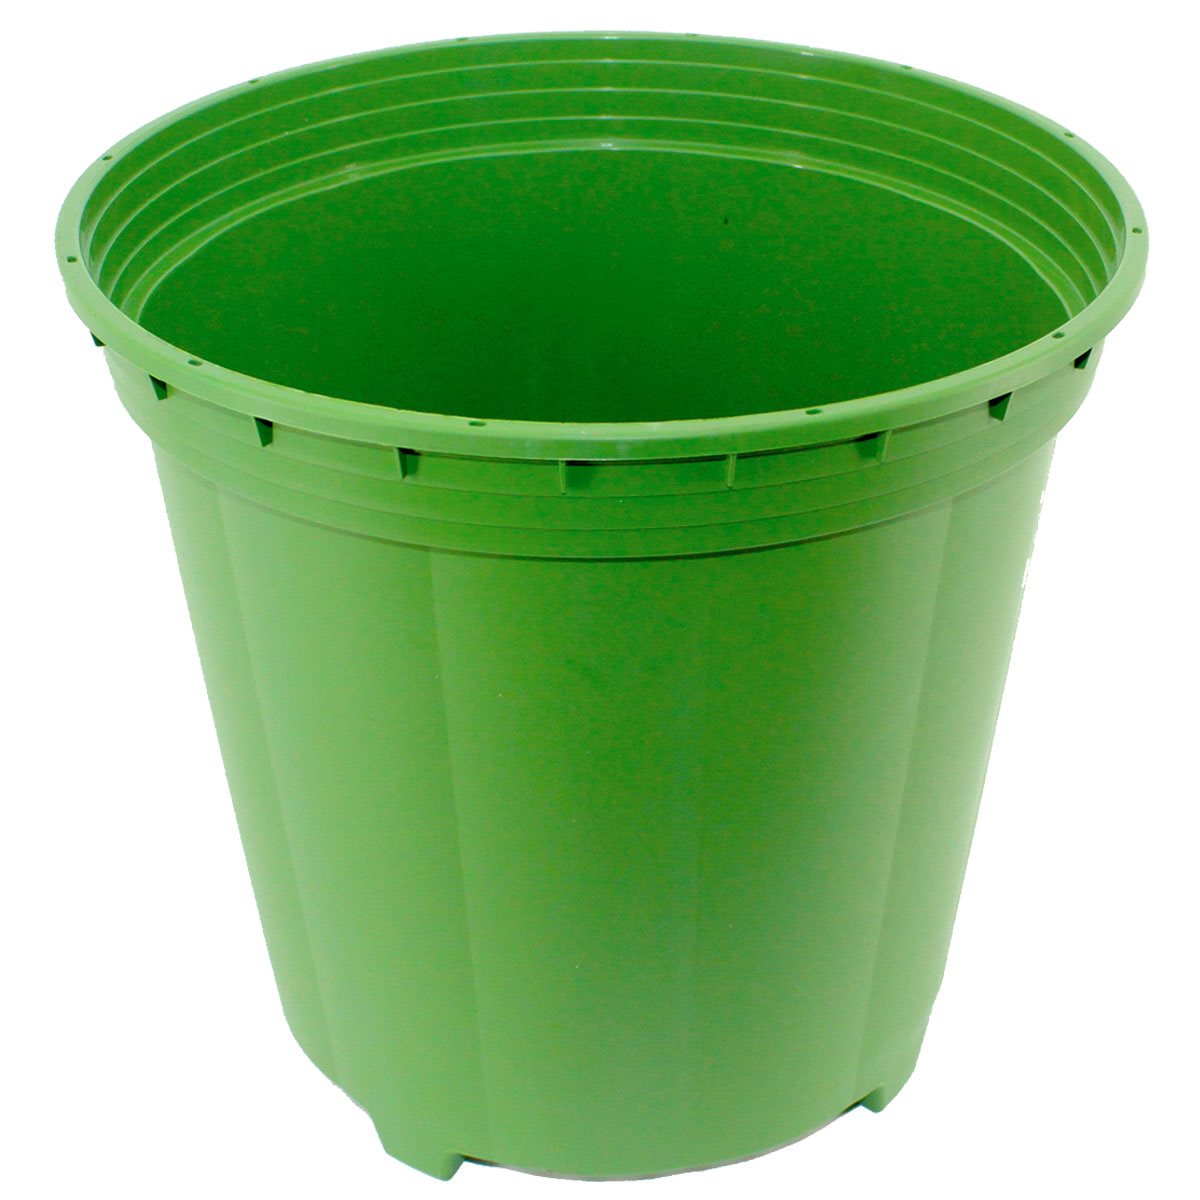 Product Image:FloraFlex Pot Pro Seau de 5 gallons